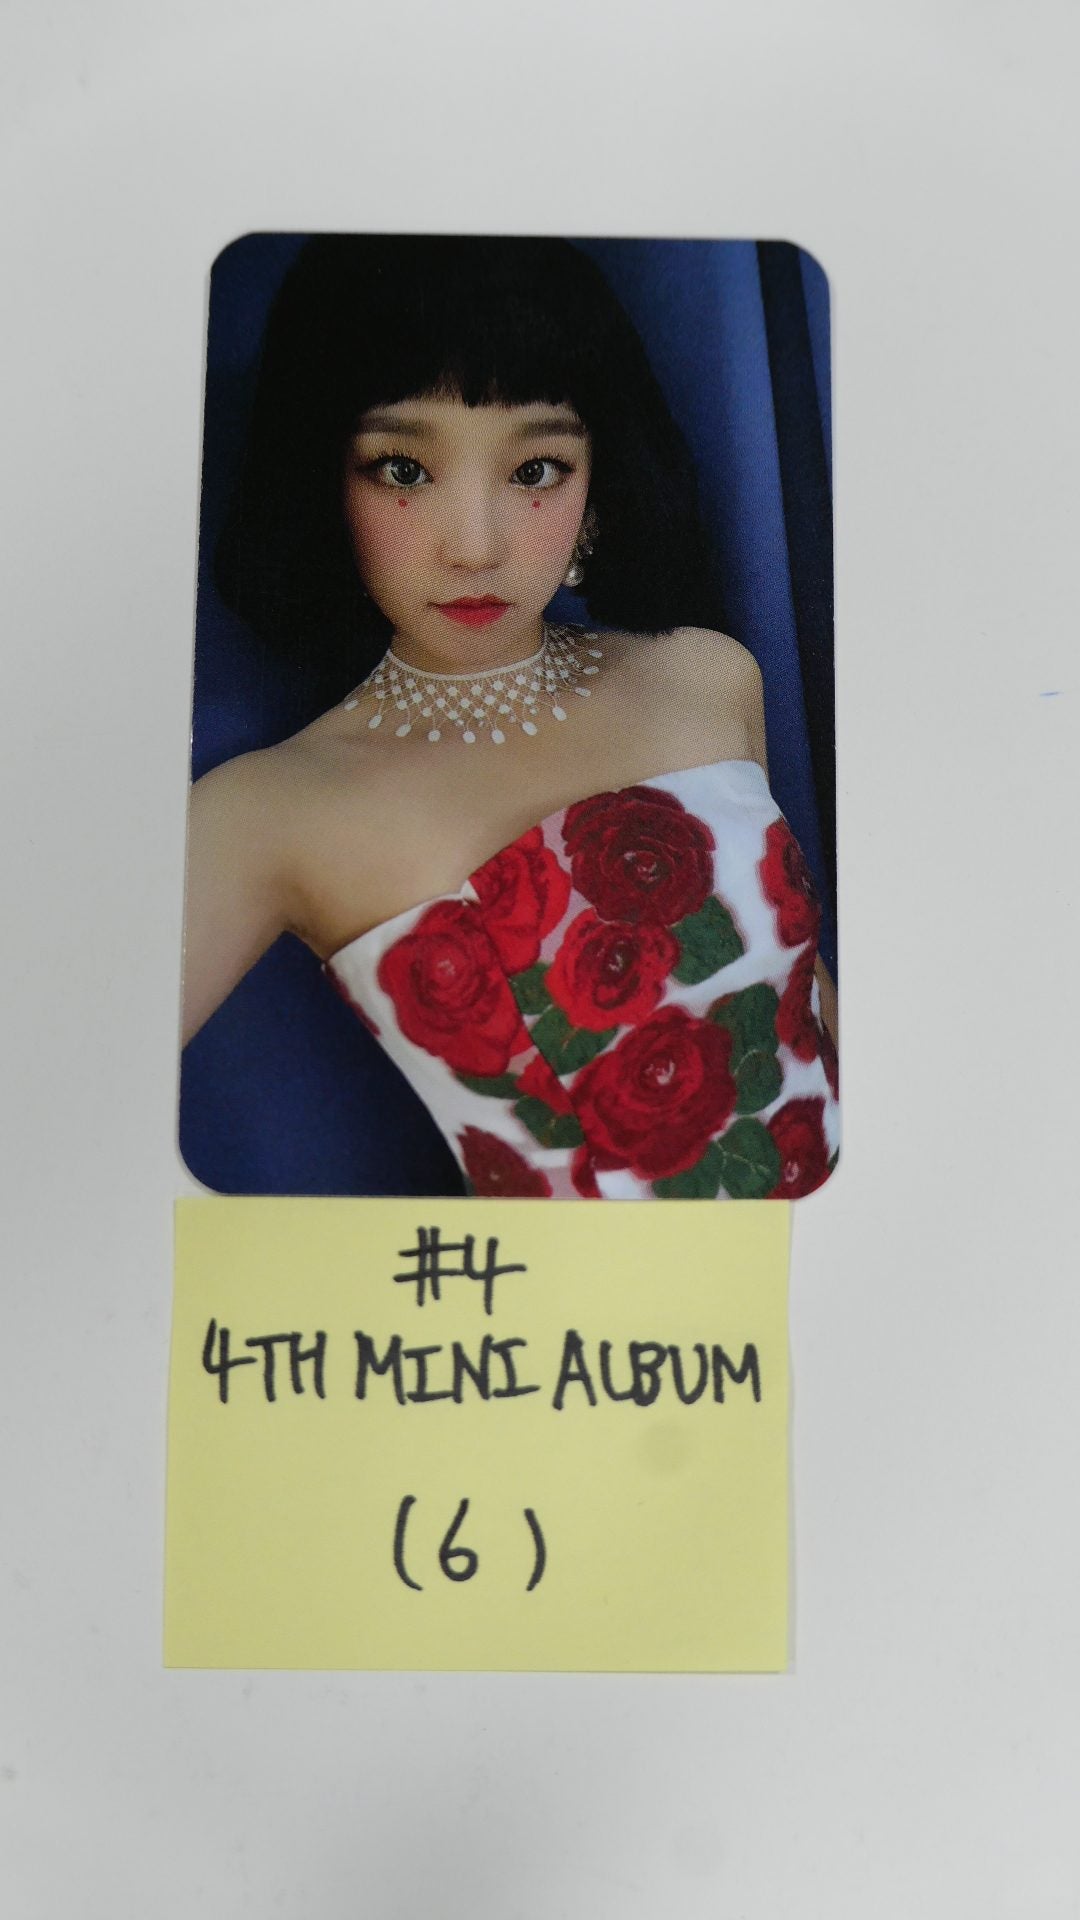 (g) I-DLE "I Burn" 미니 4집 - 오피셜 포토카드, 엽서, 스티커 - YUQI